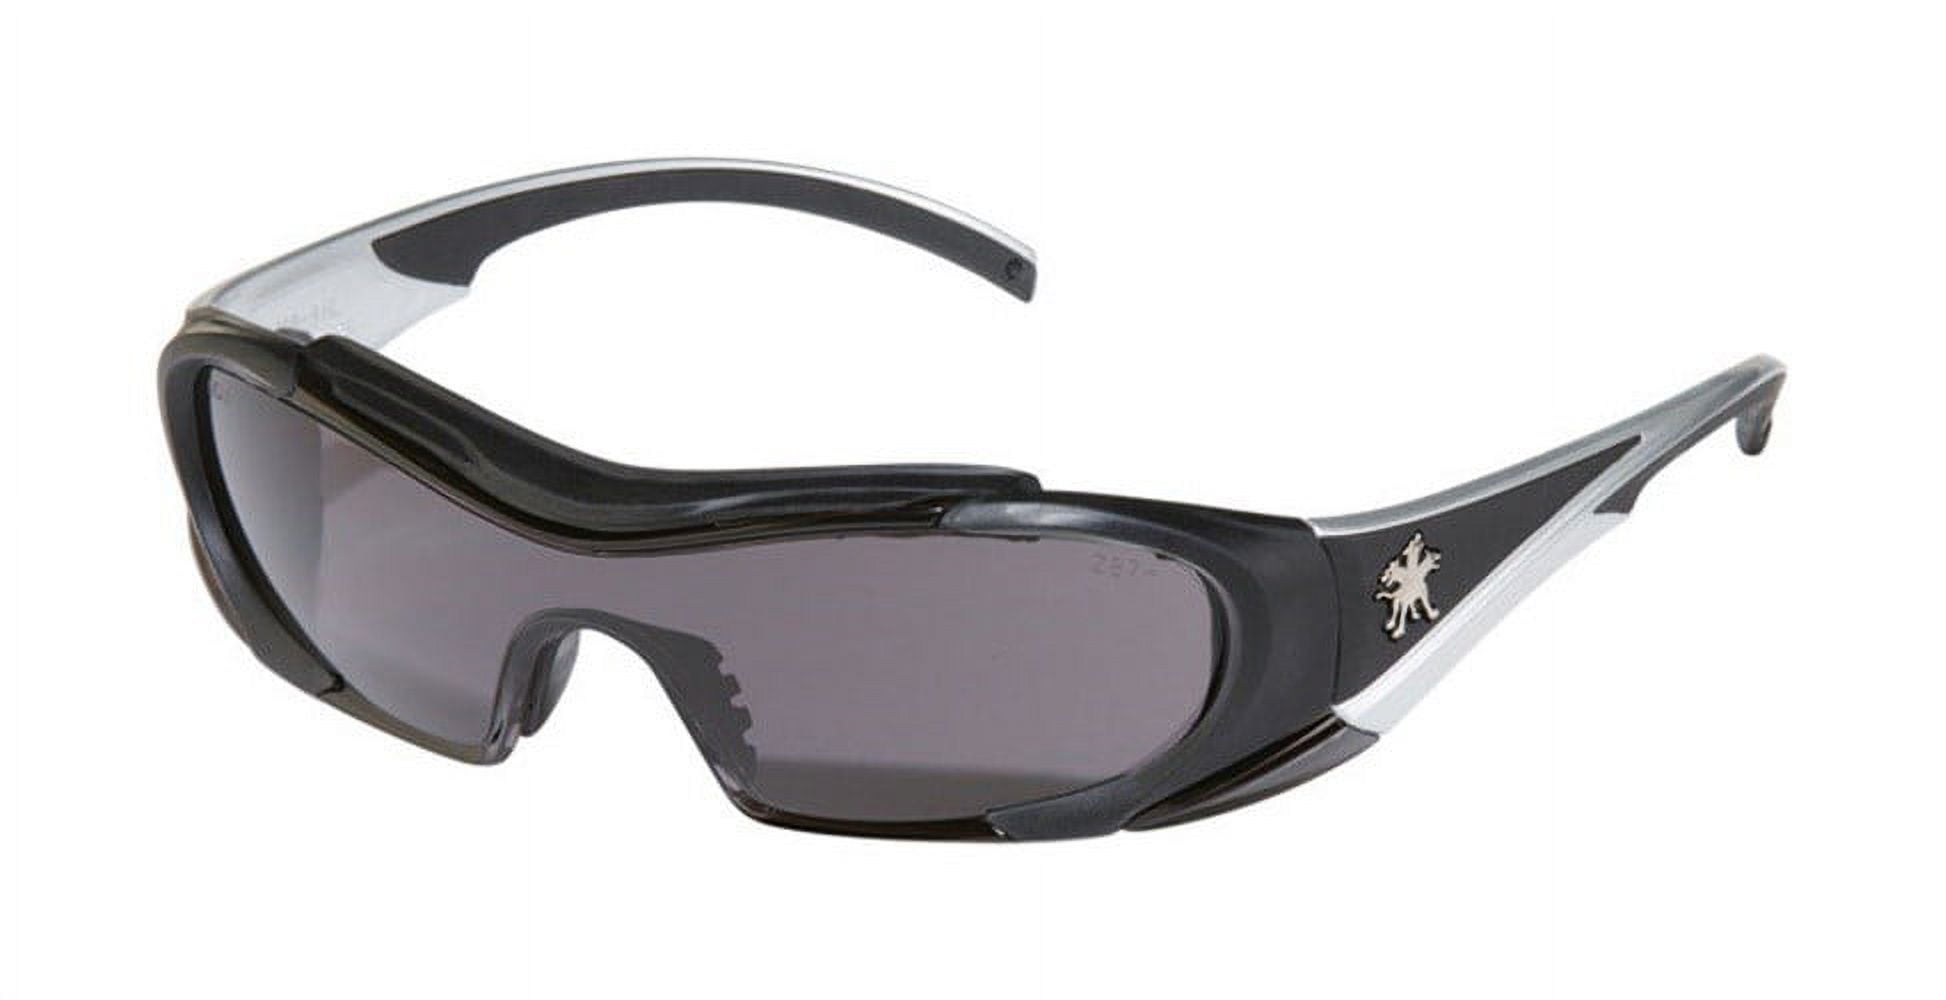 Mcr 2418531 Multi-purpose Safety Glasses Antifog Gray Lens With Black Frame, Gray Lens Frame - Pack Of 12